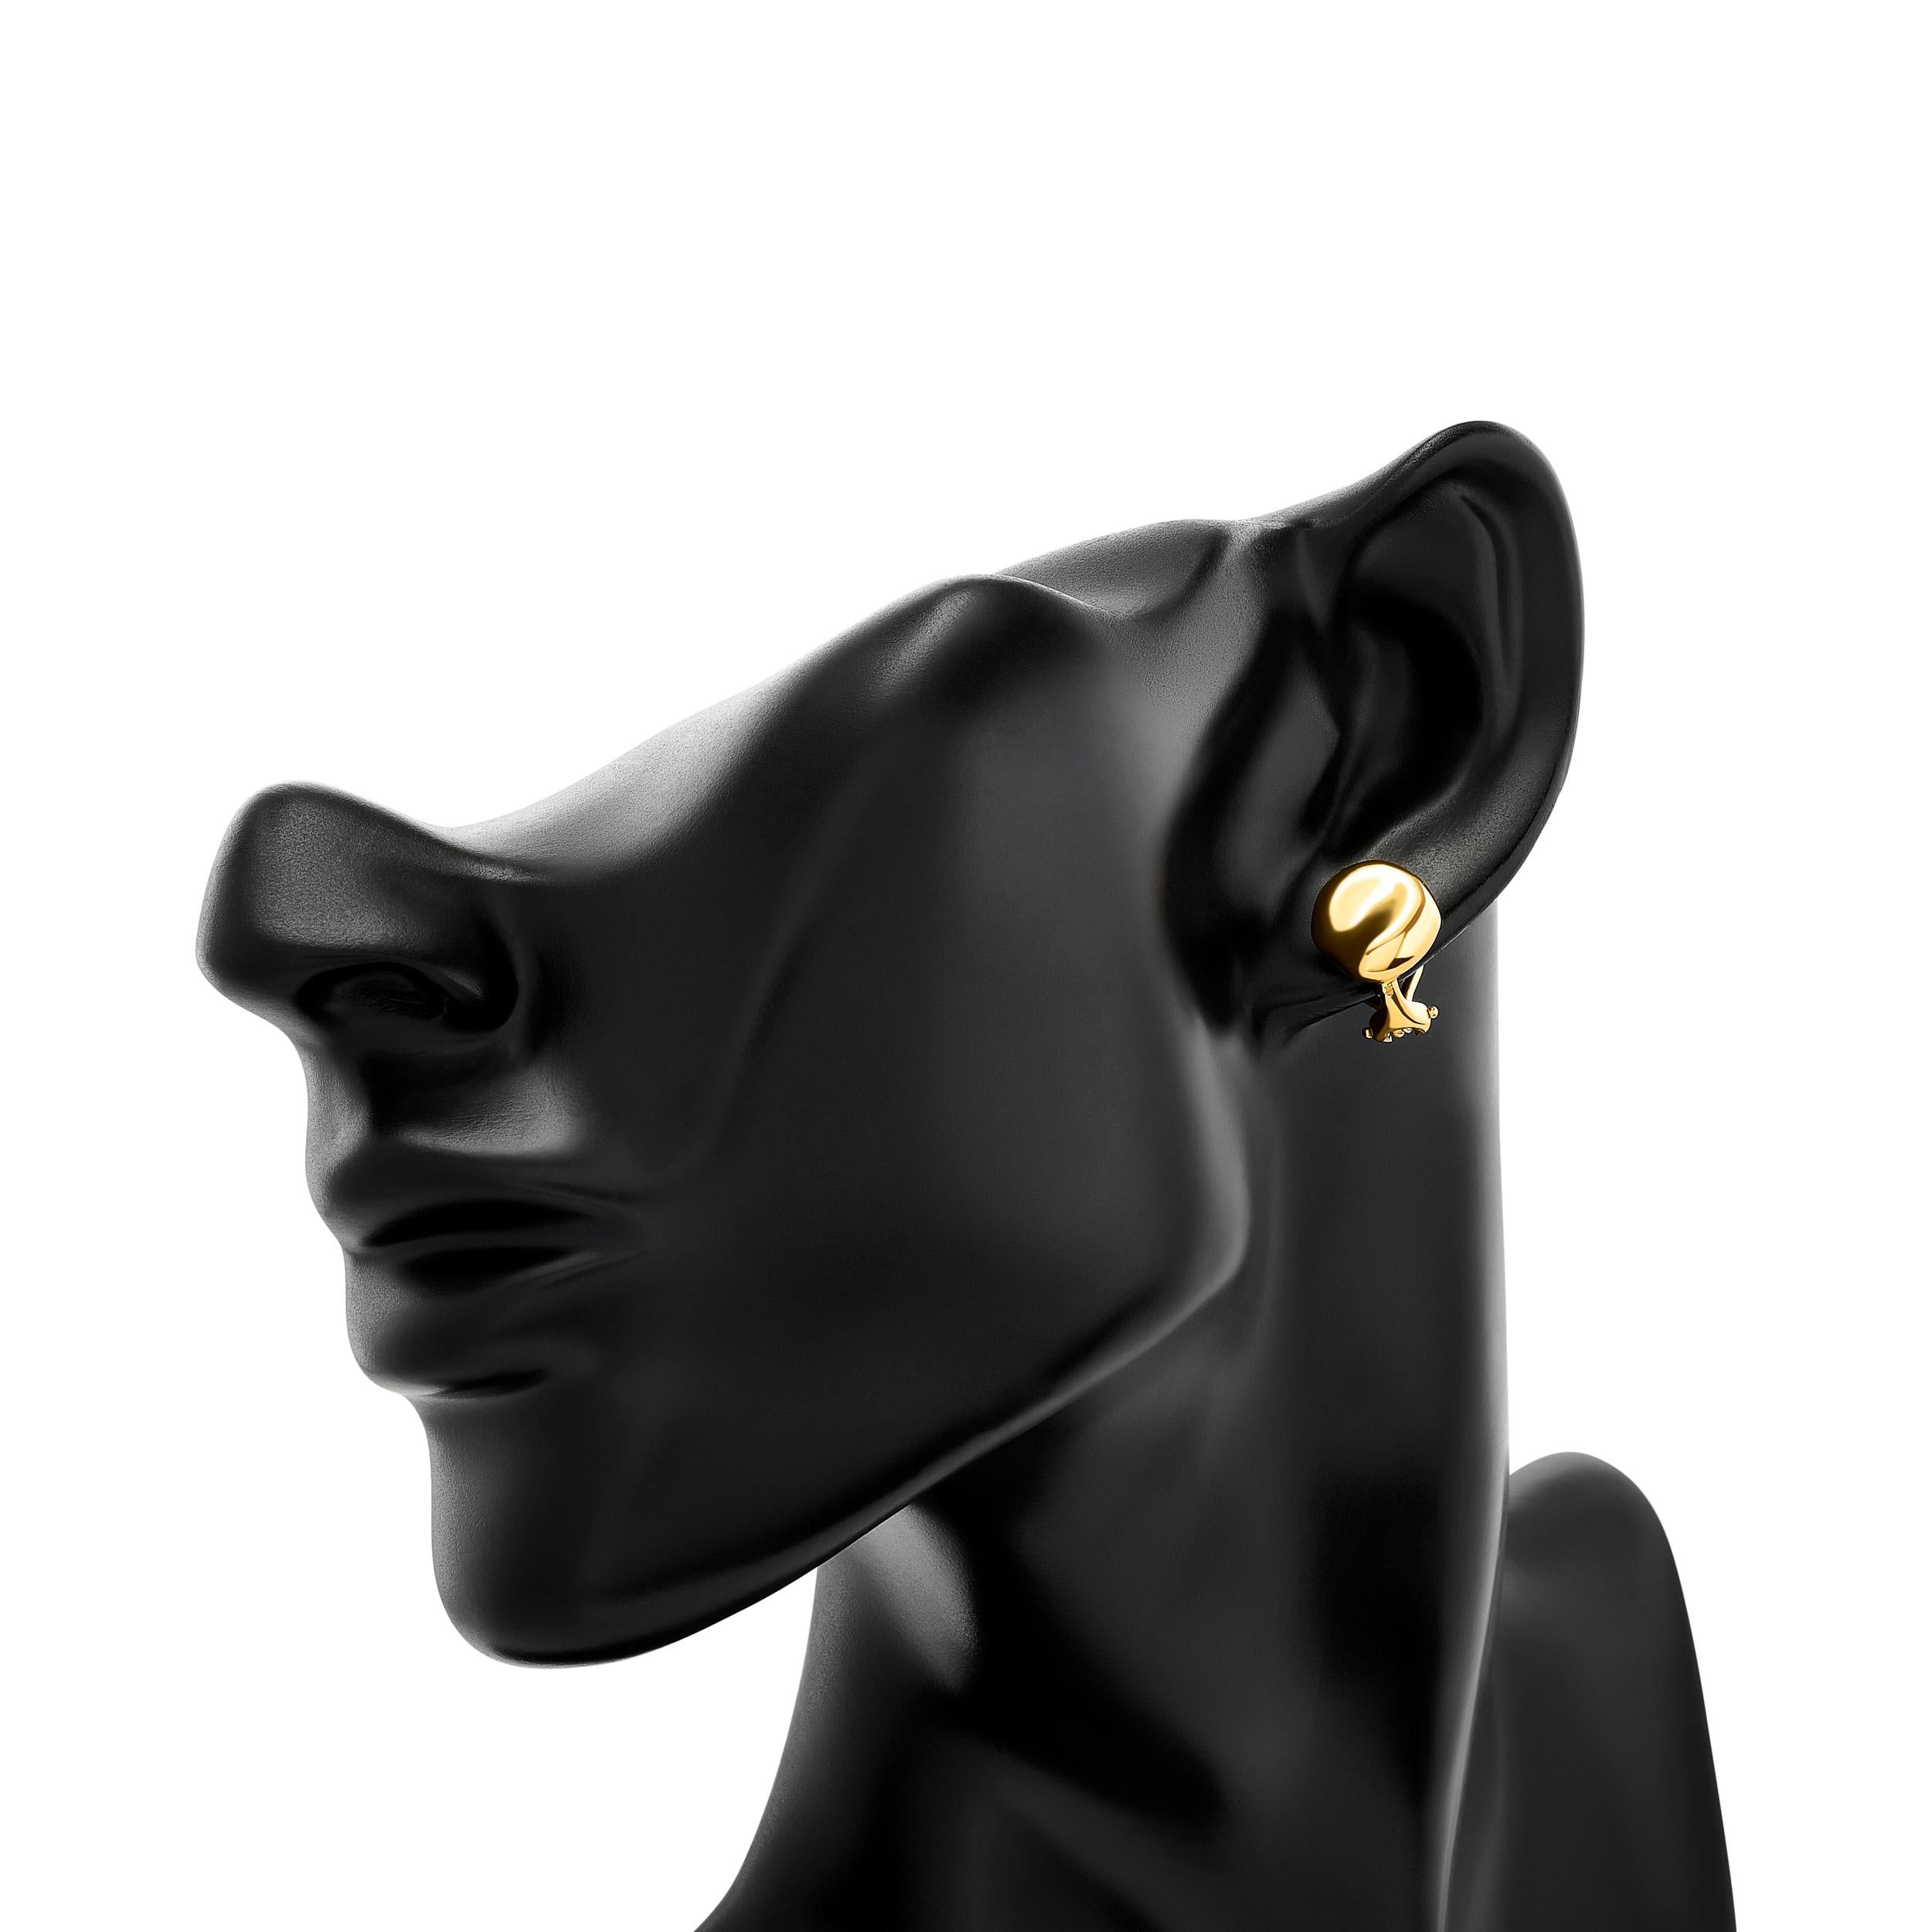 Les boucles d'oreilles haricot en or jaune 18 carats Elsa Peretti de Tiffany & Co. sont une incarnation délicate du style.

Elles sont signées : 